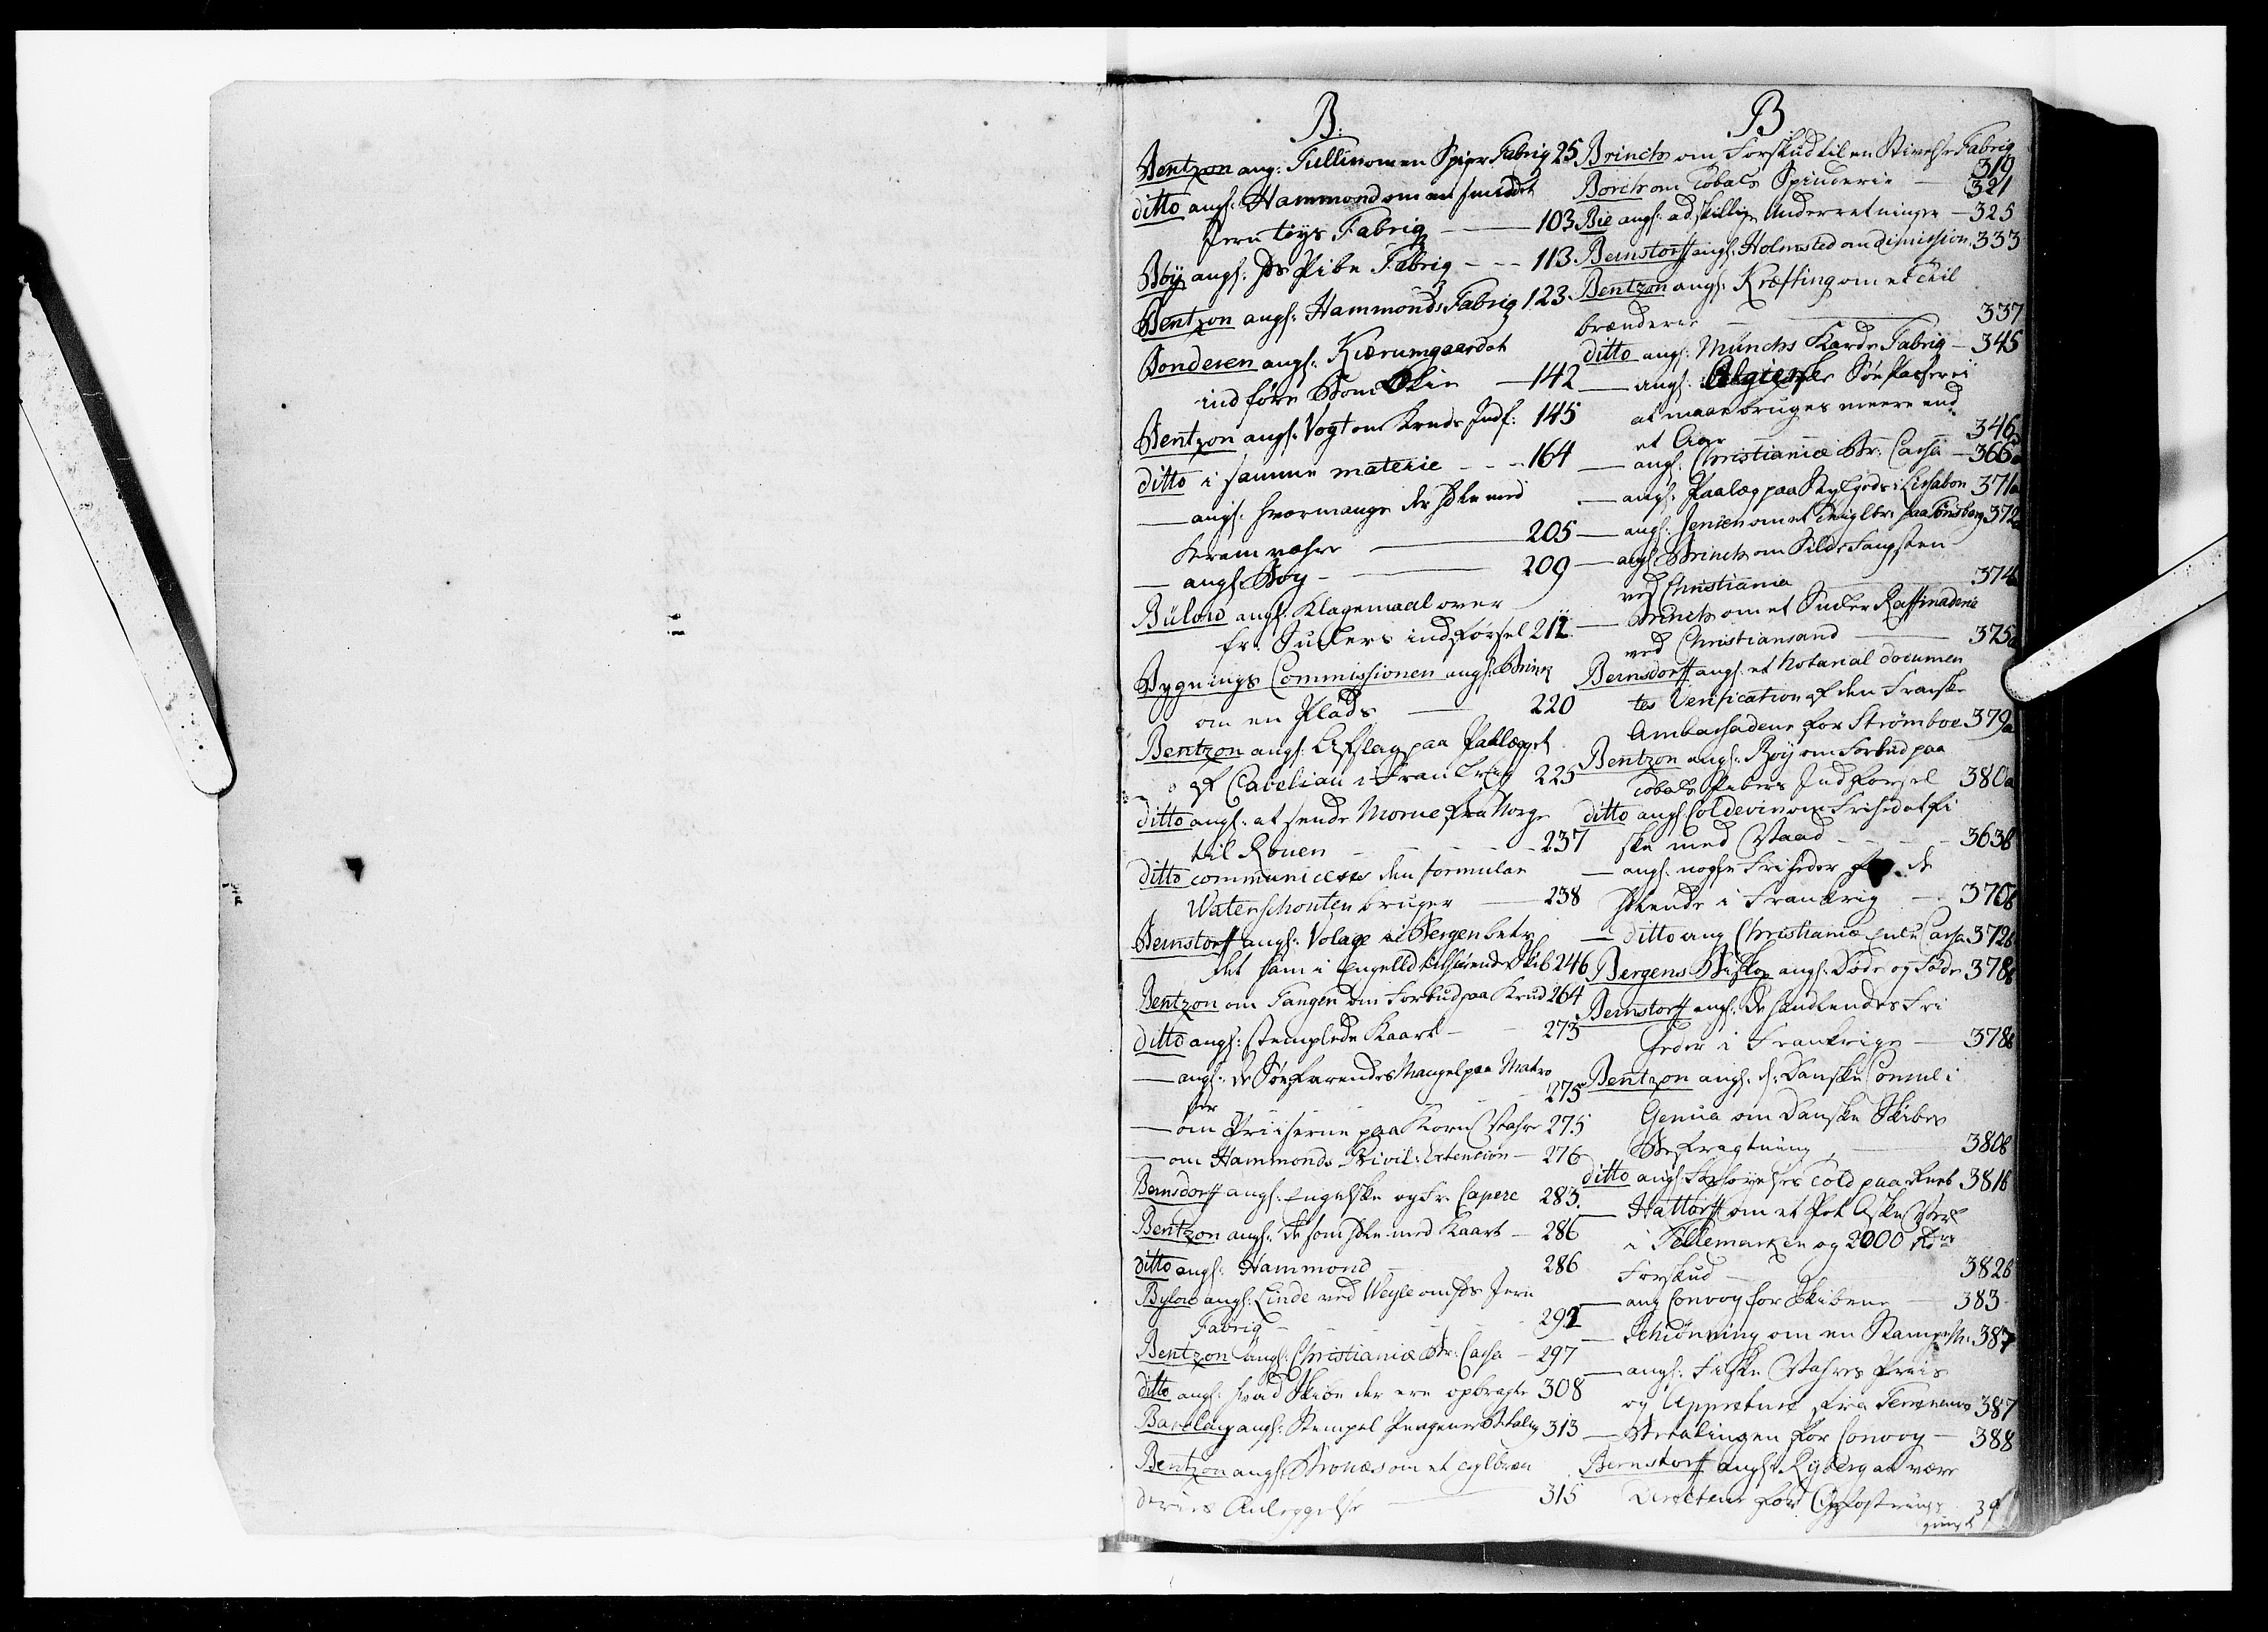 Kommercekollegiet, Dansk-Norske Sekretariat, DRA/A-0001/10/45: Dansk-Norsk kopibog, 1754-1761